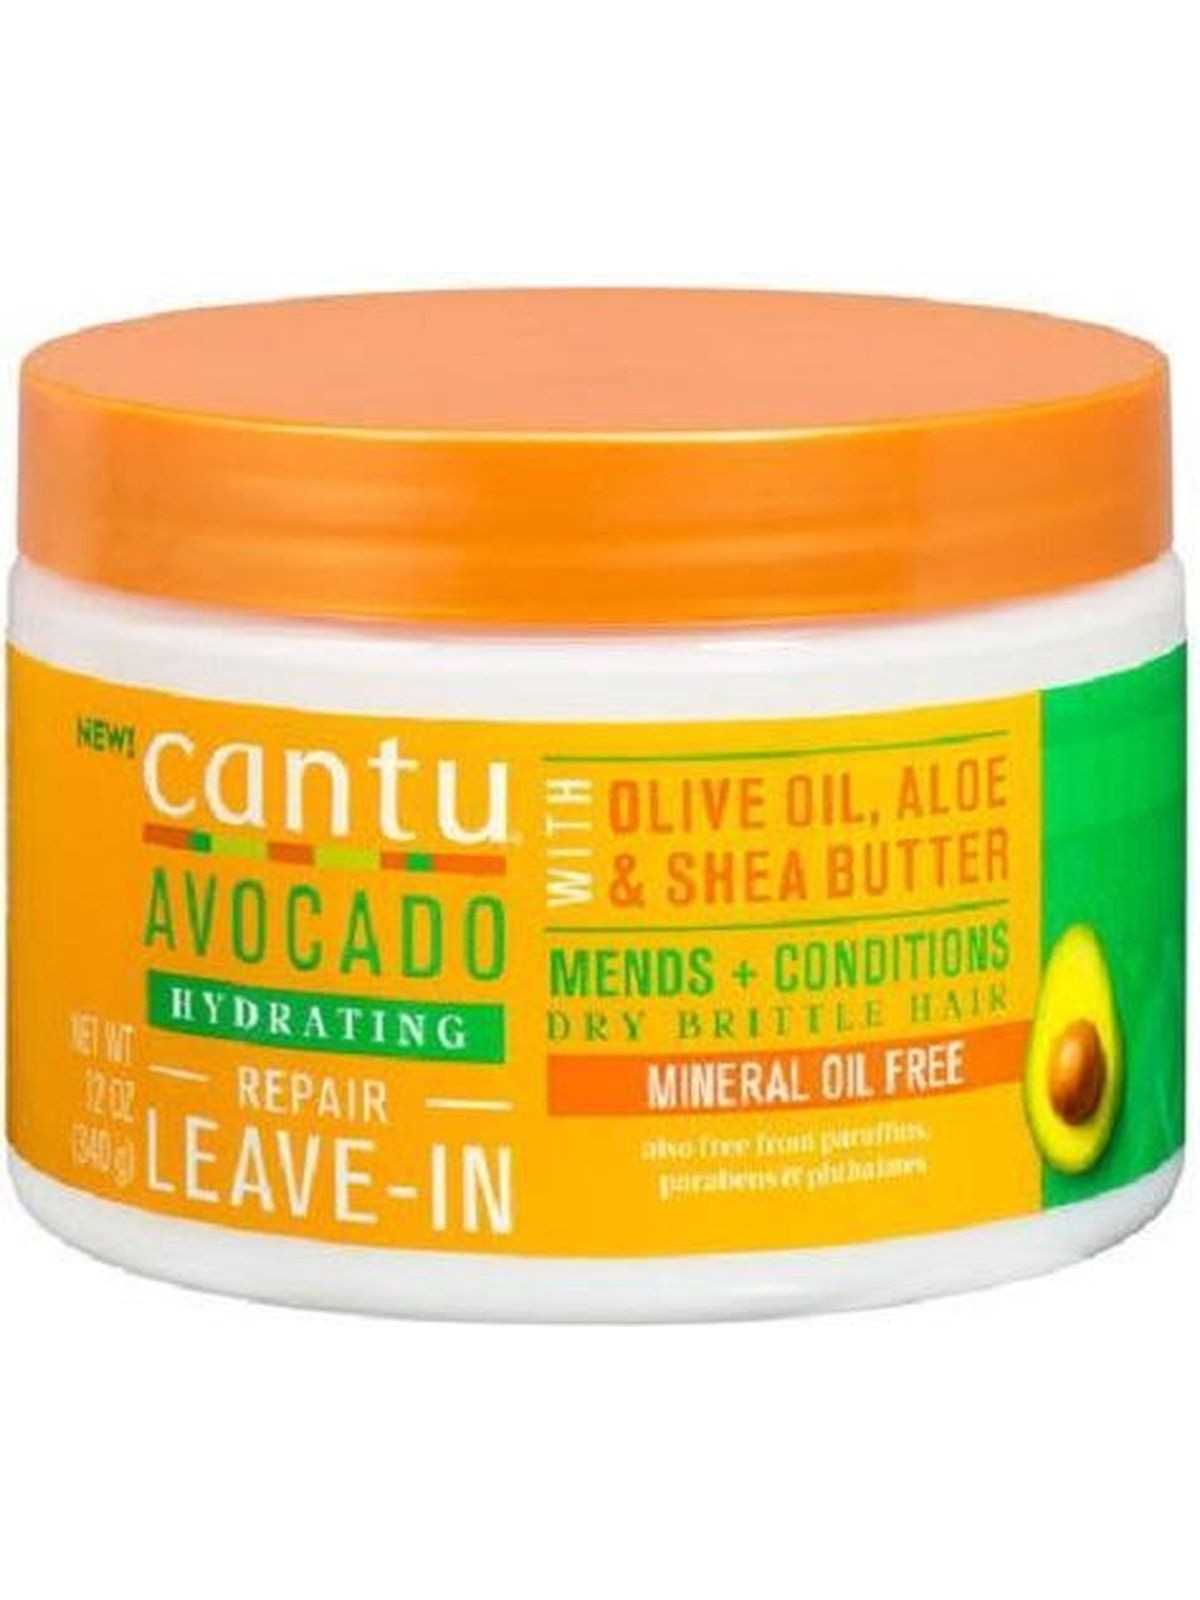 Comprar Cantu Avocado Hydrating Leave-in Conditioner Repair Cream 340g en Método CURLY por sólo 8,95 € o un precio específico de 8,95 € en Thalie Care